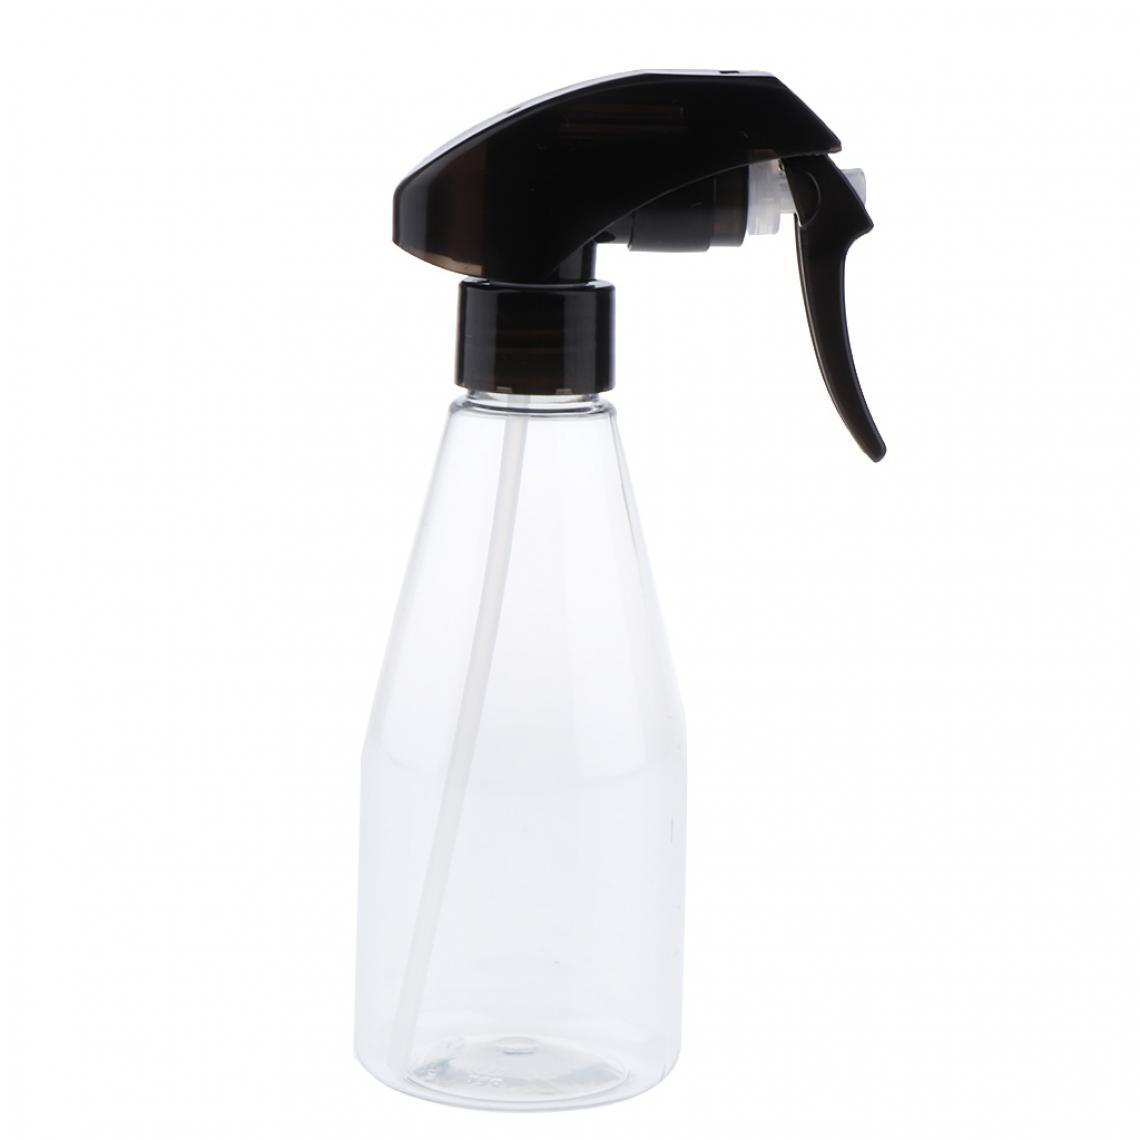 marque generique - Vaporisateur vide de bouteille vide contenant des bouteilles vides 200ml clair + noir - Maquillage et coiffure